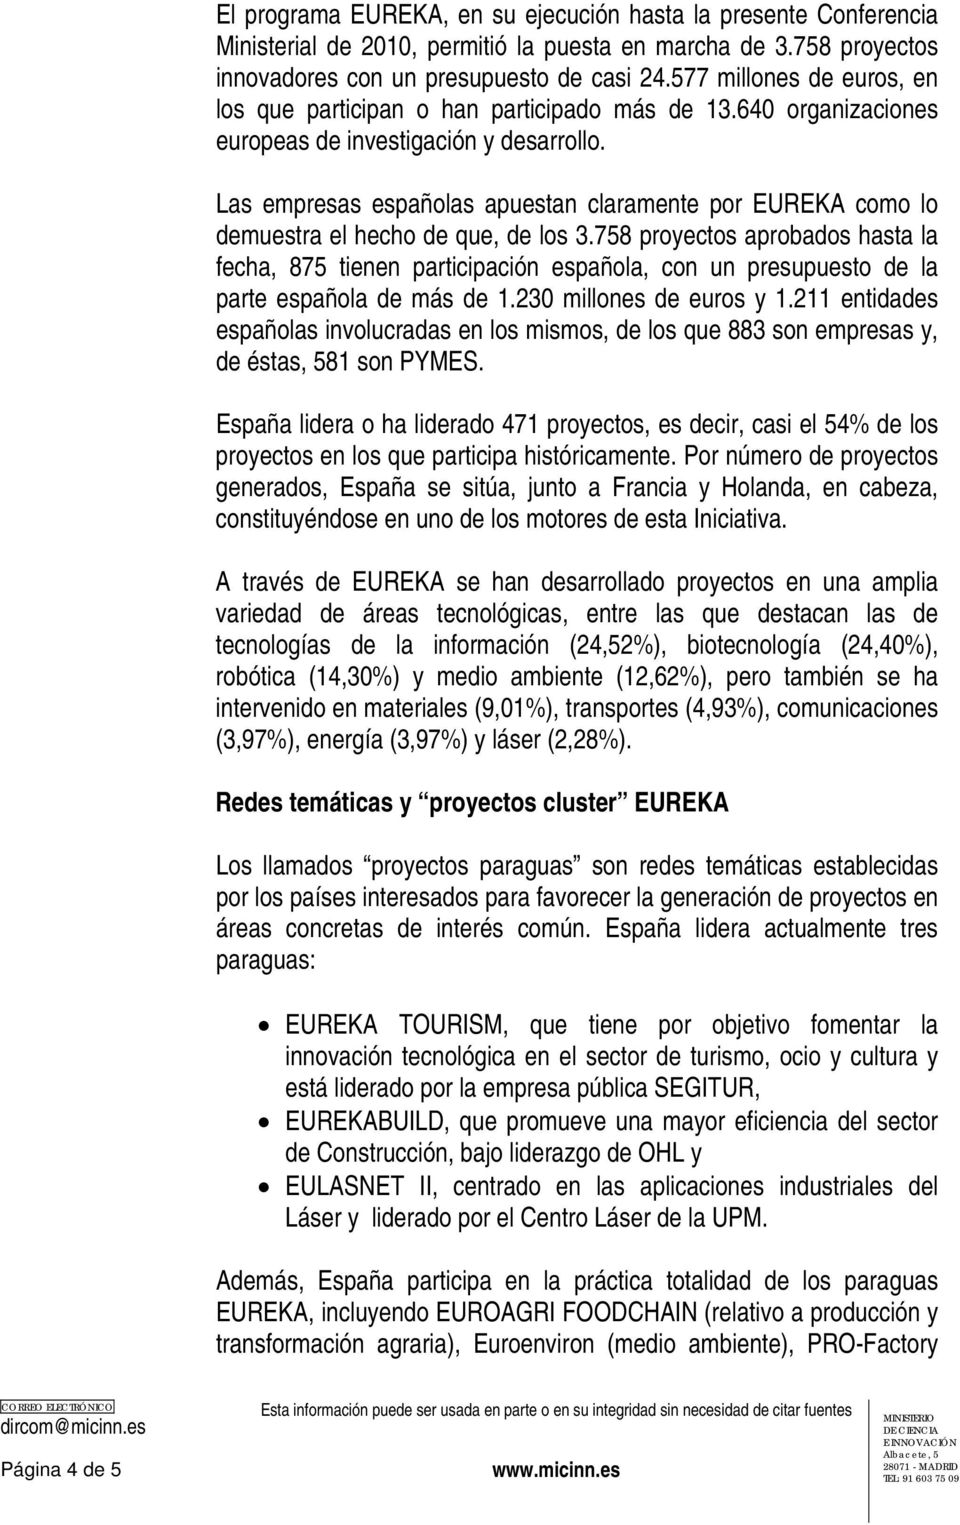 Las empresas españolas apuestan claramente por EUREKA como lo demuestra el hecho de que, de los 3.